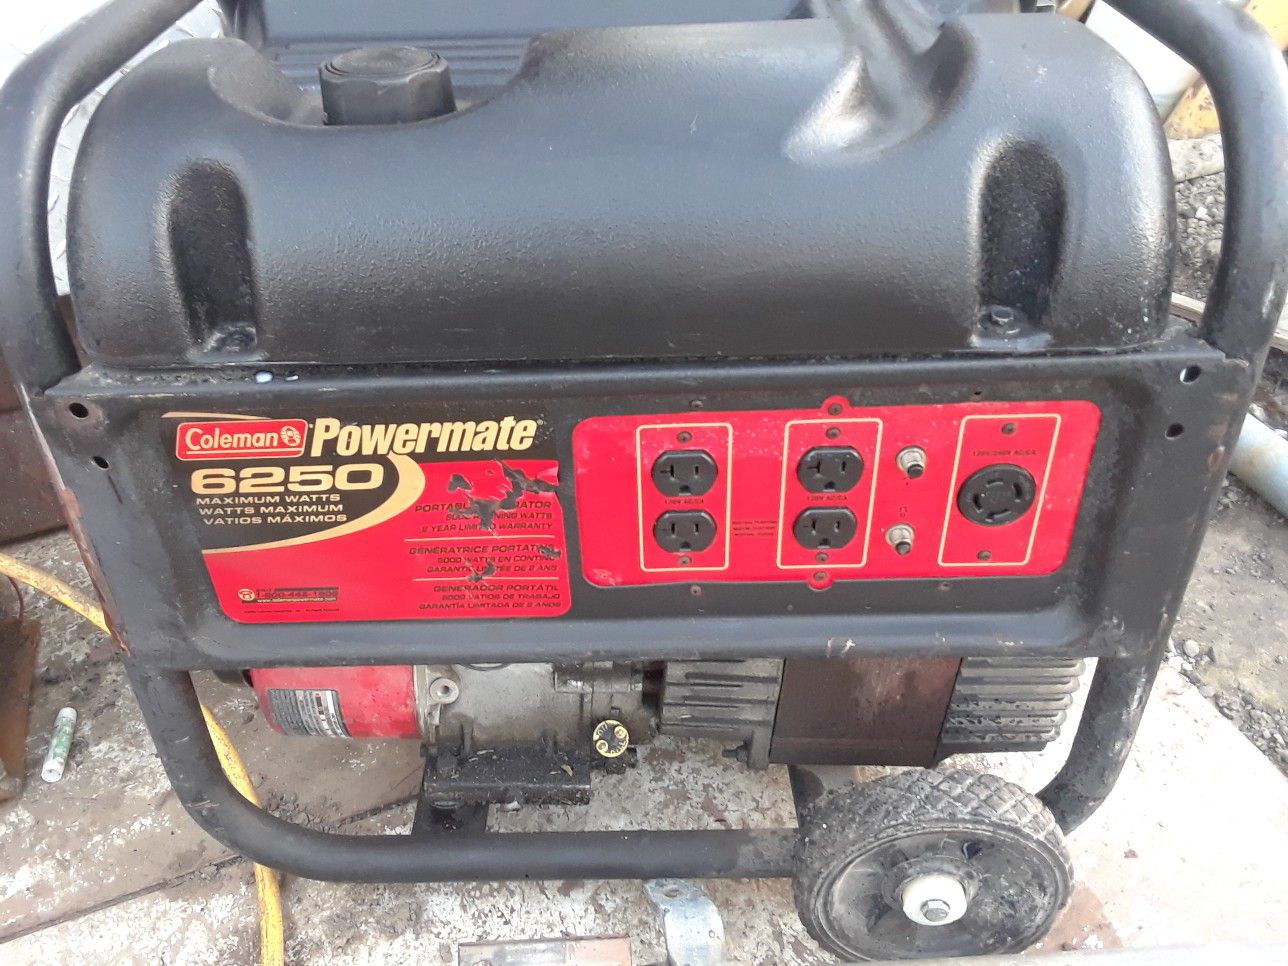 Colman powermate 6250v generator